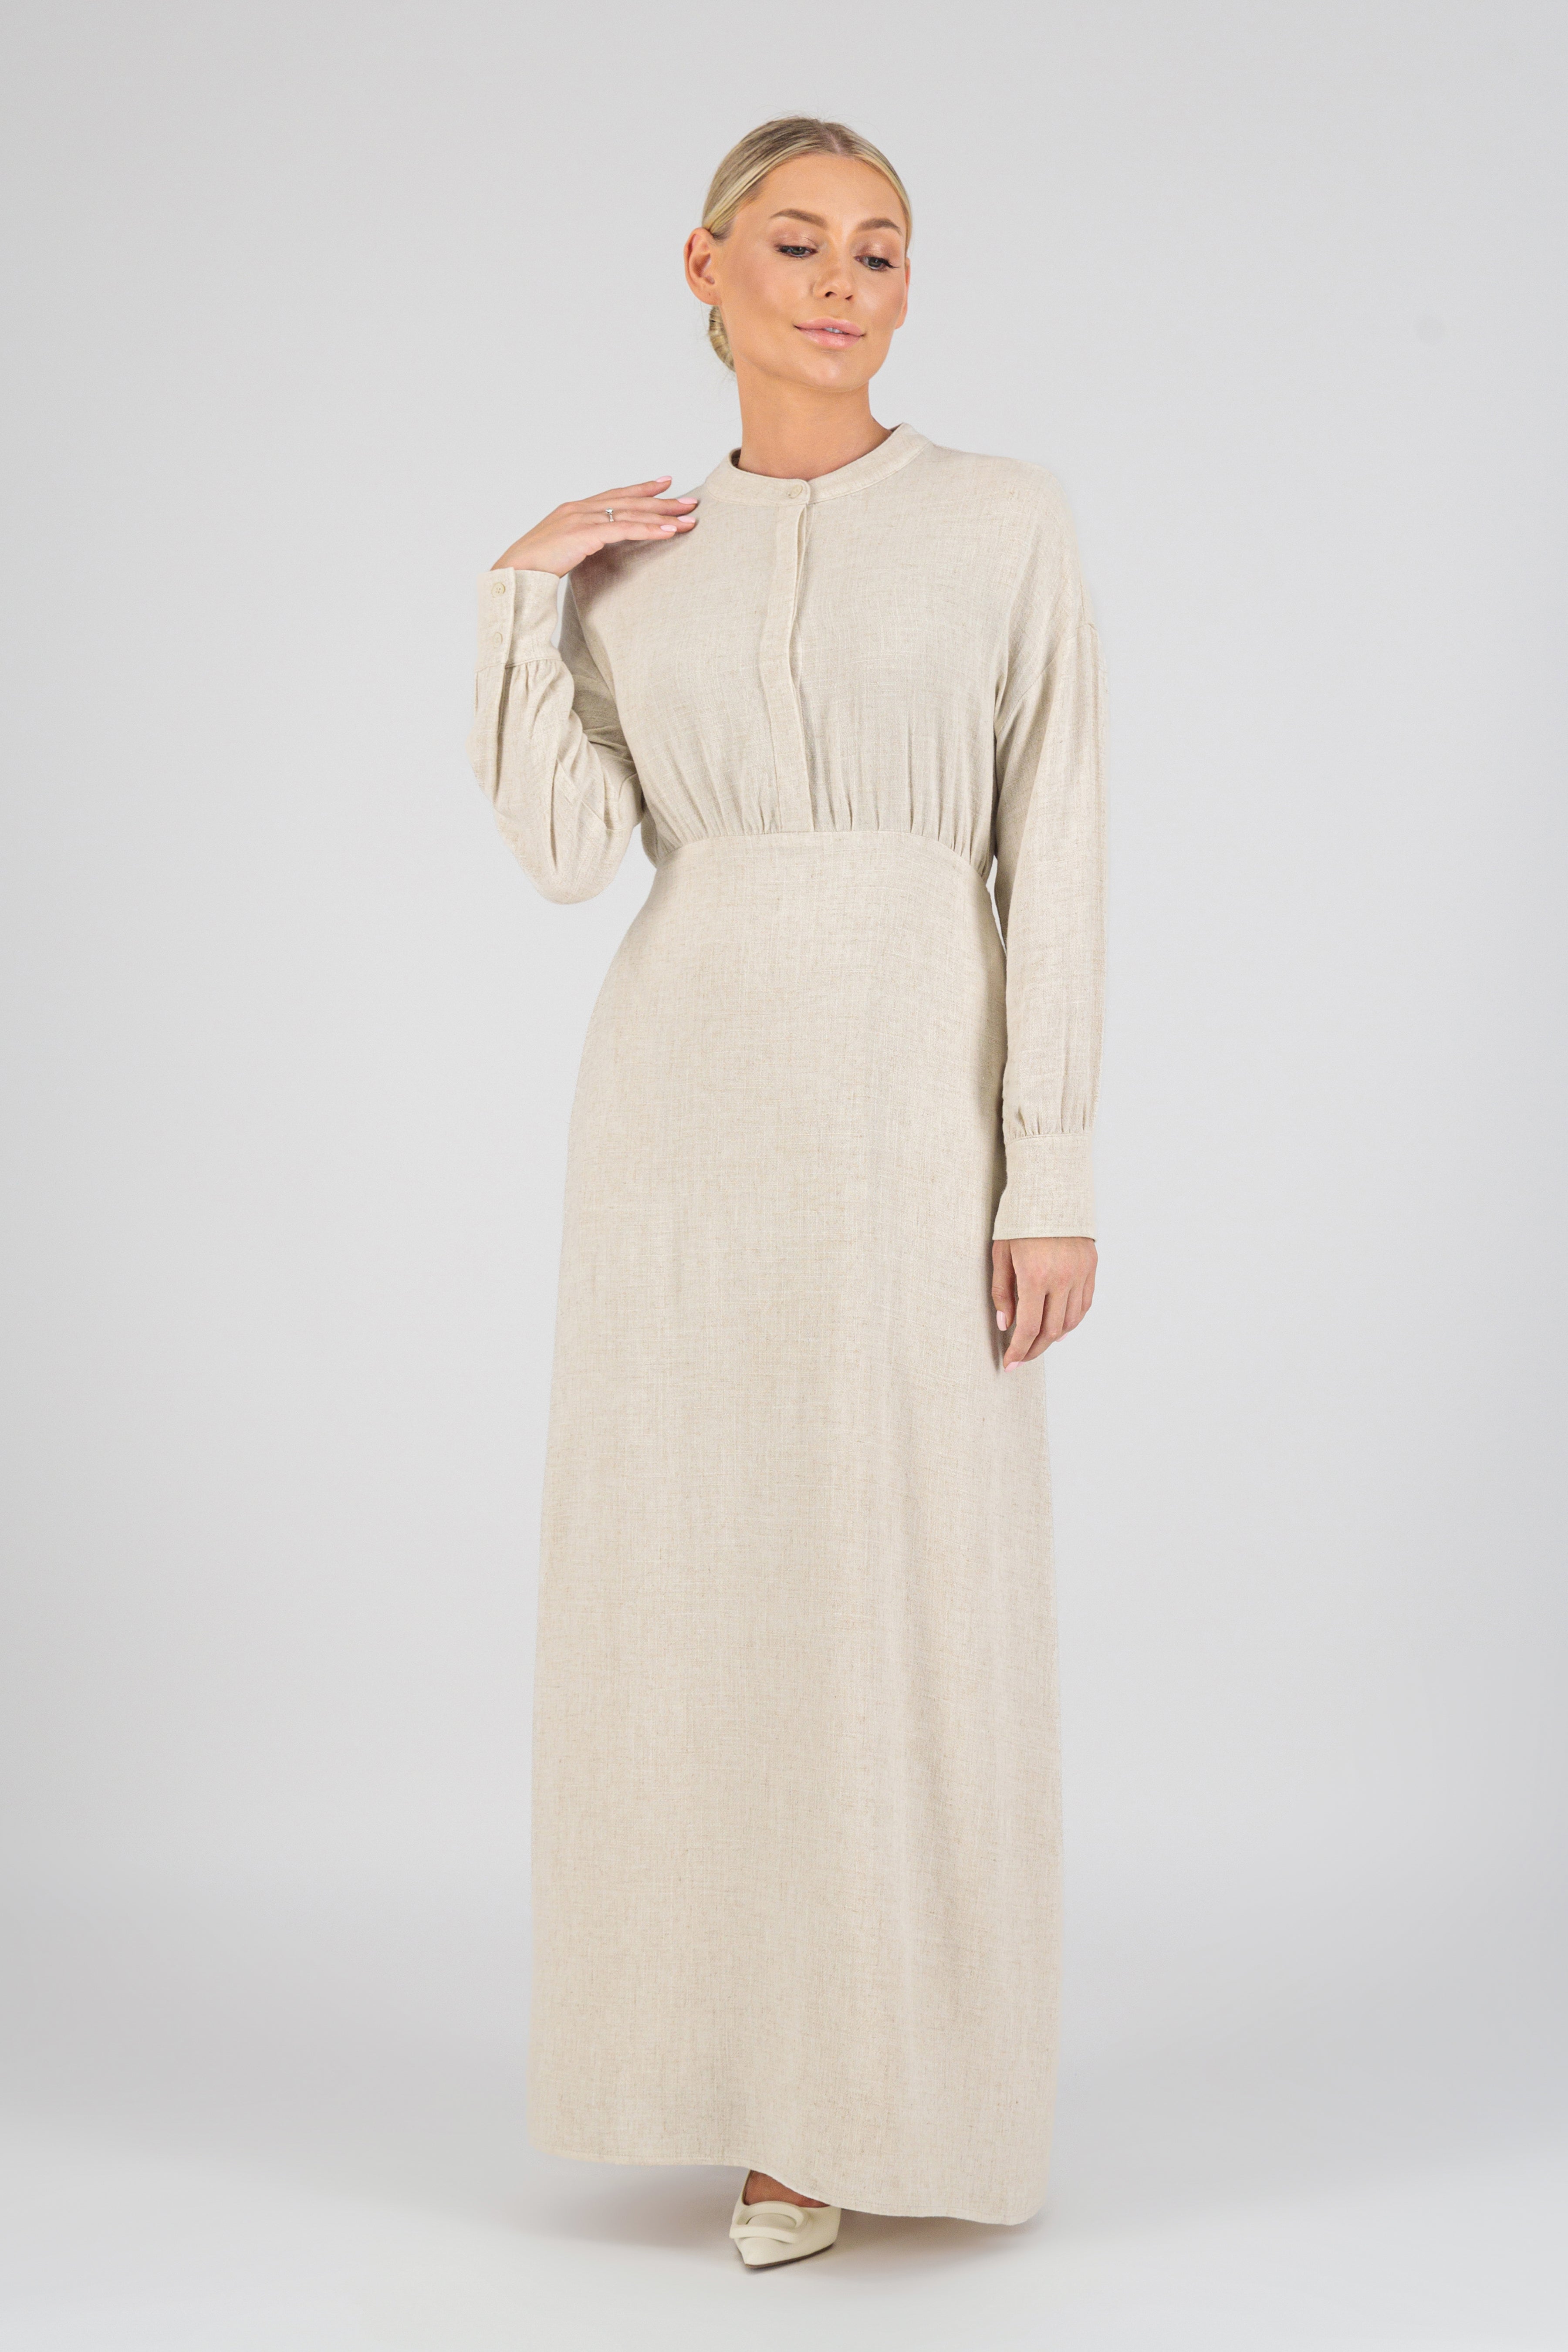 US - Linen Blend Dress - Vanilla